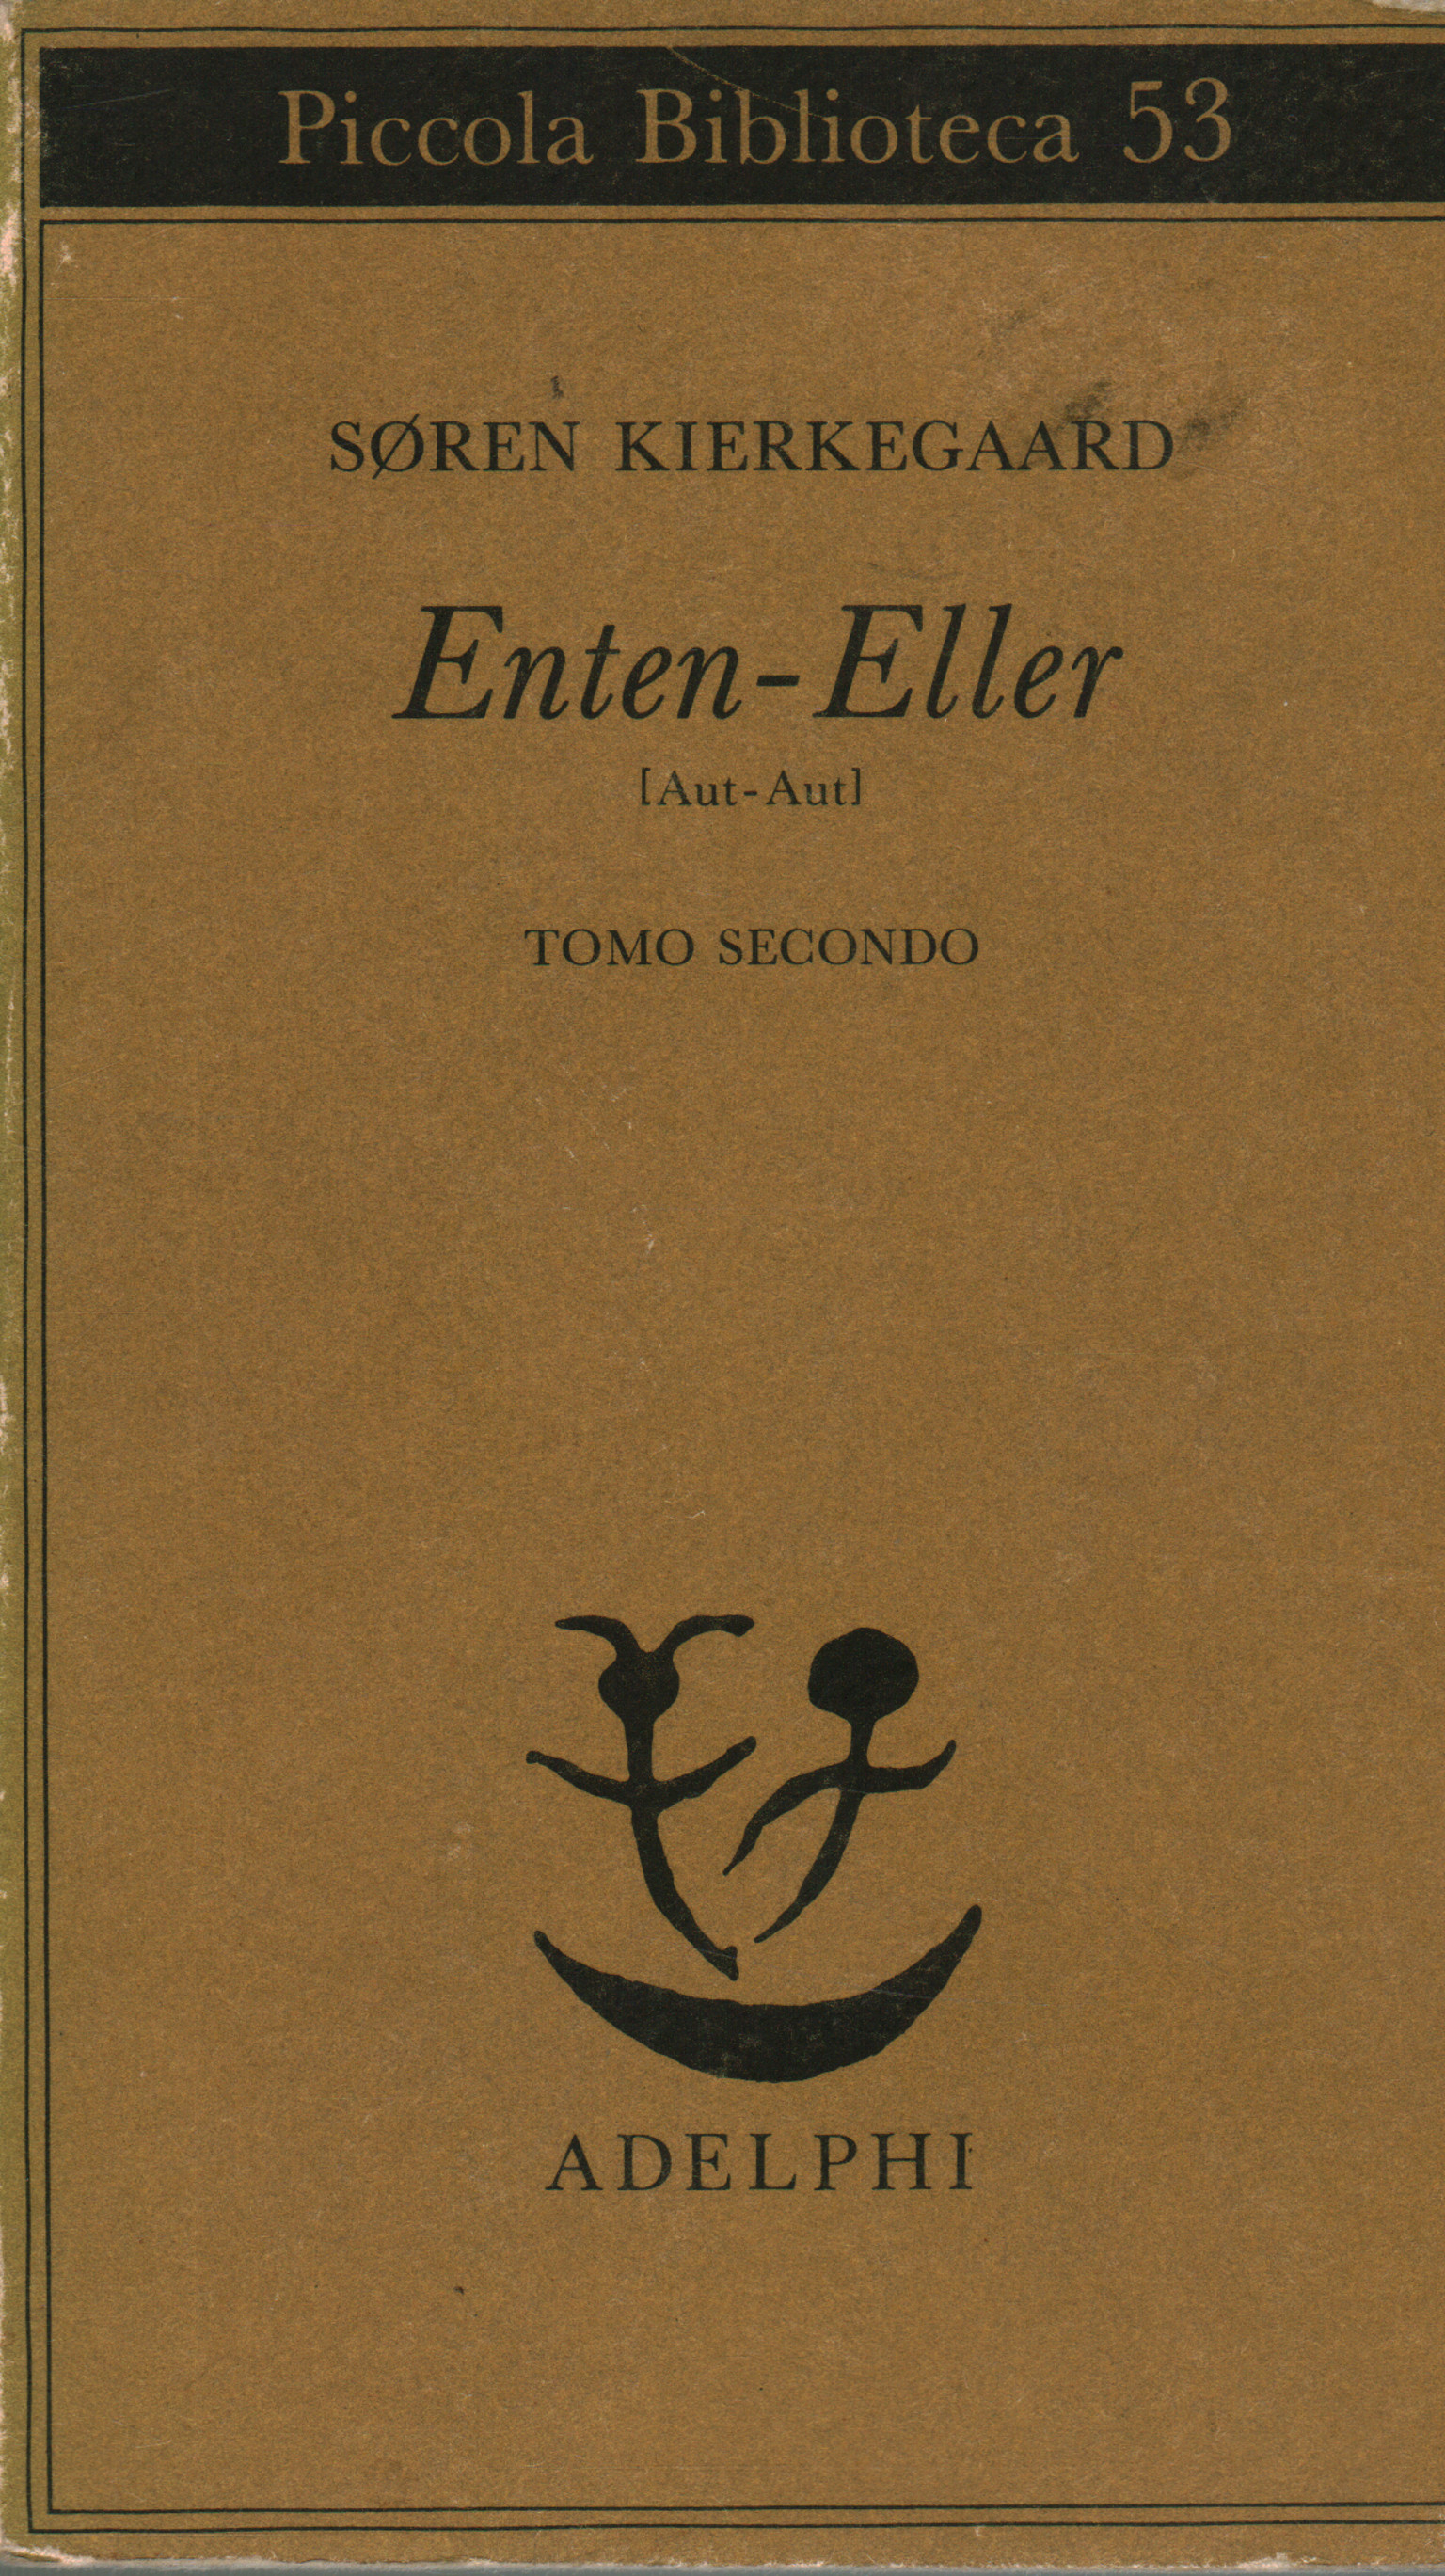 Enten - Eller. Volume II, Søren Kierkegaard